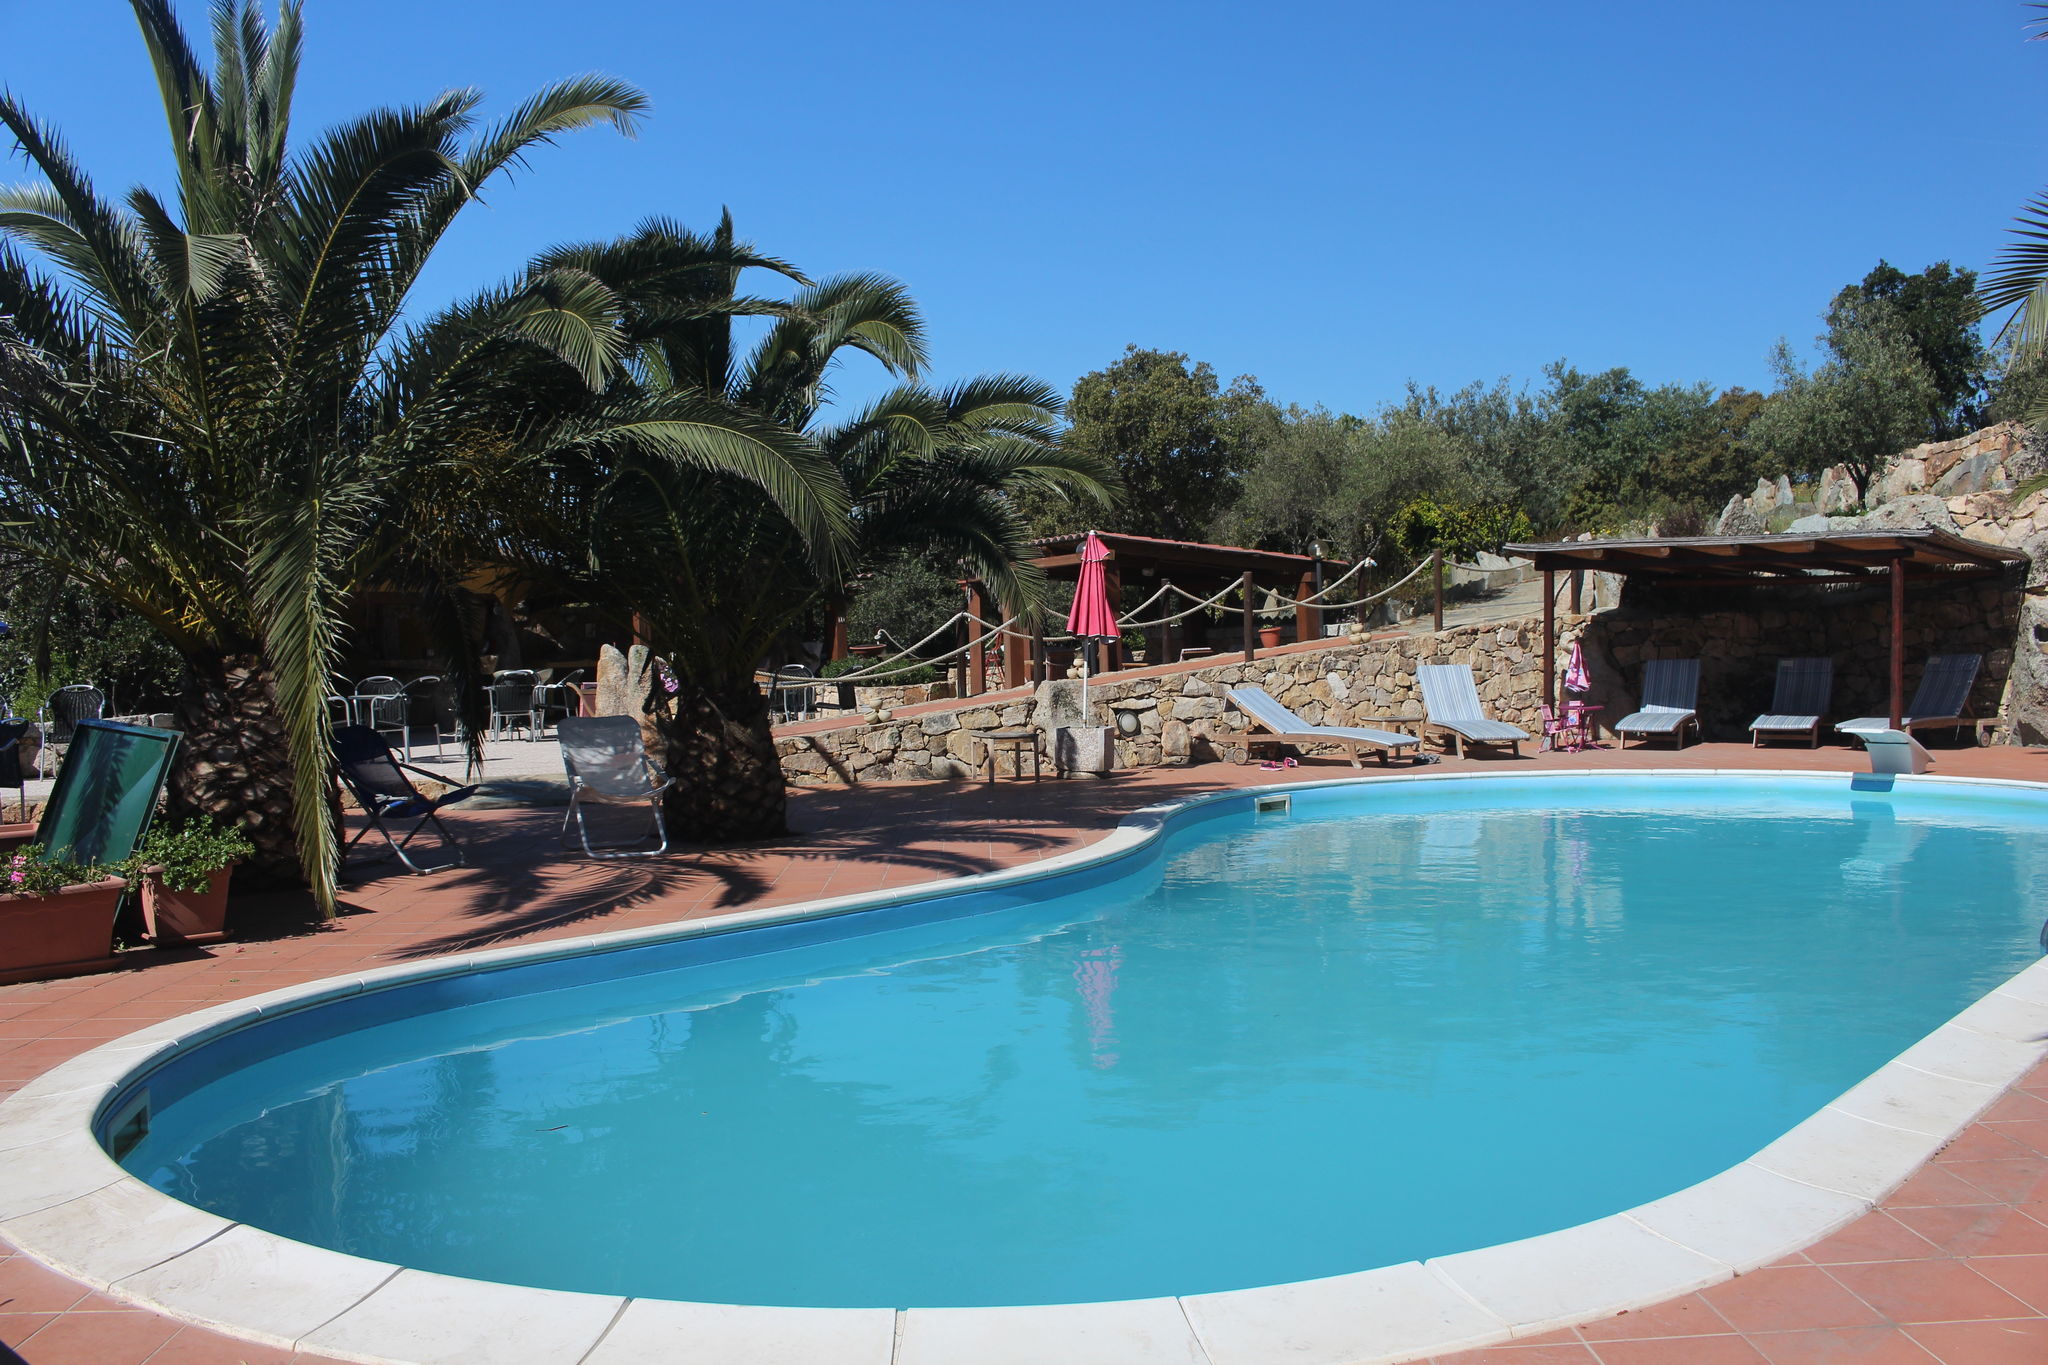 Luxuriöses Ferienhaus mit Pool in Olbia, Italien